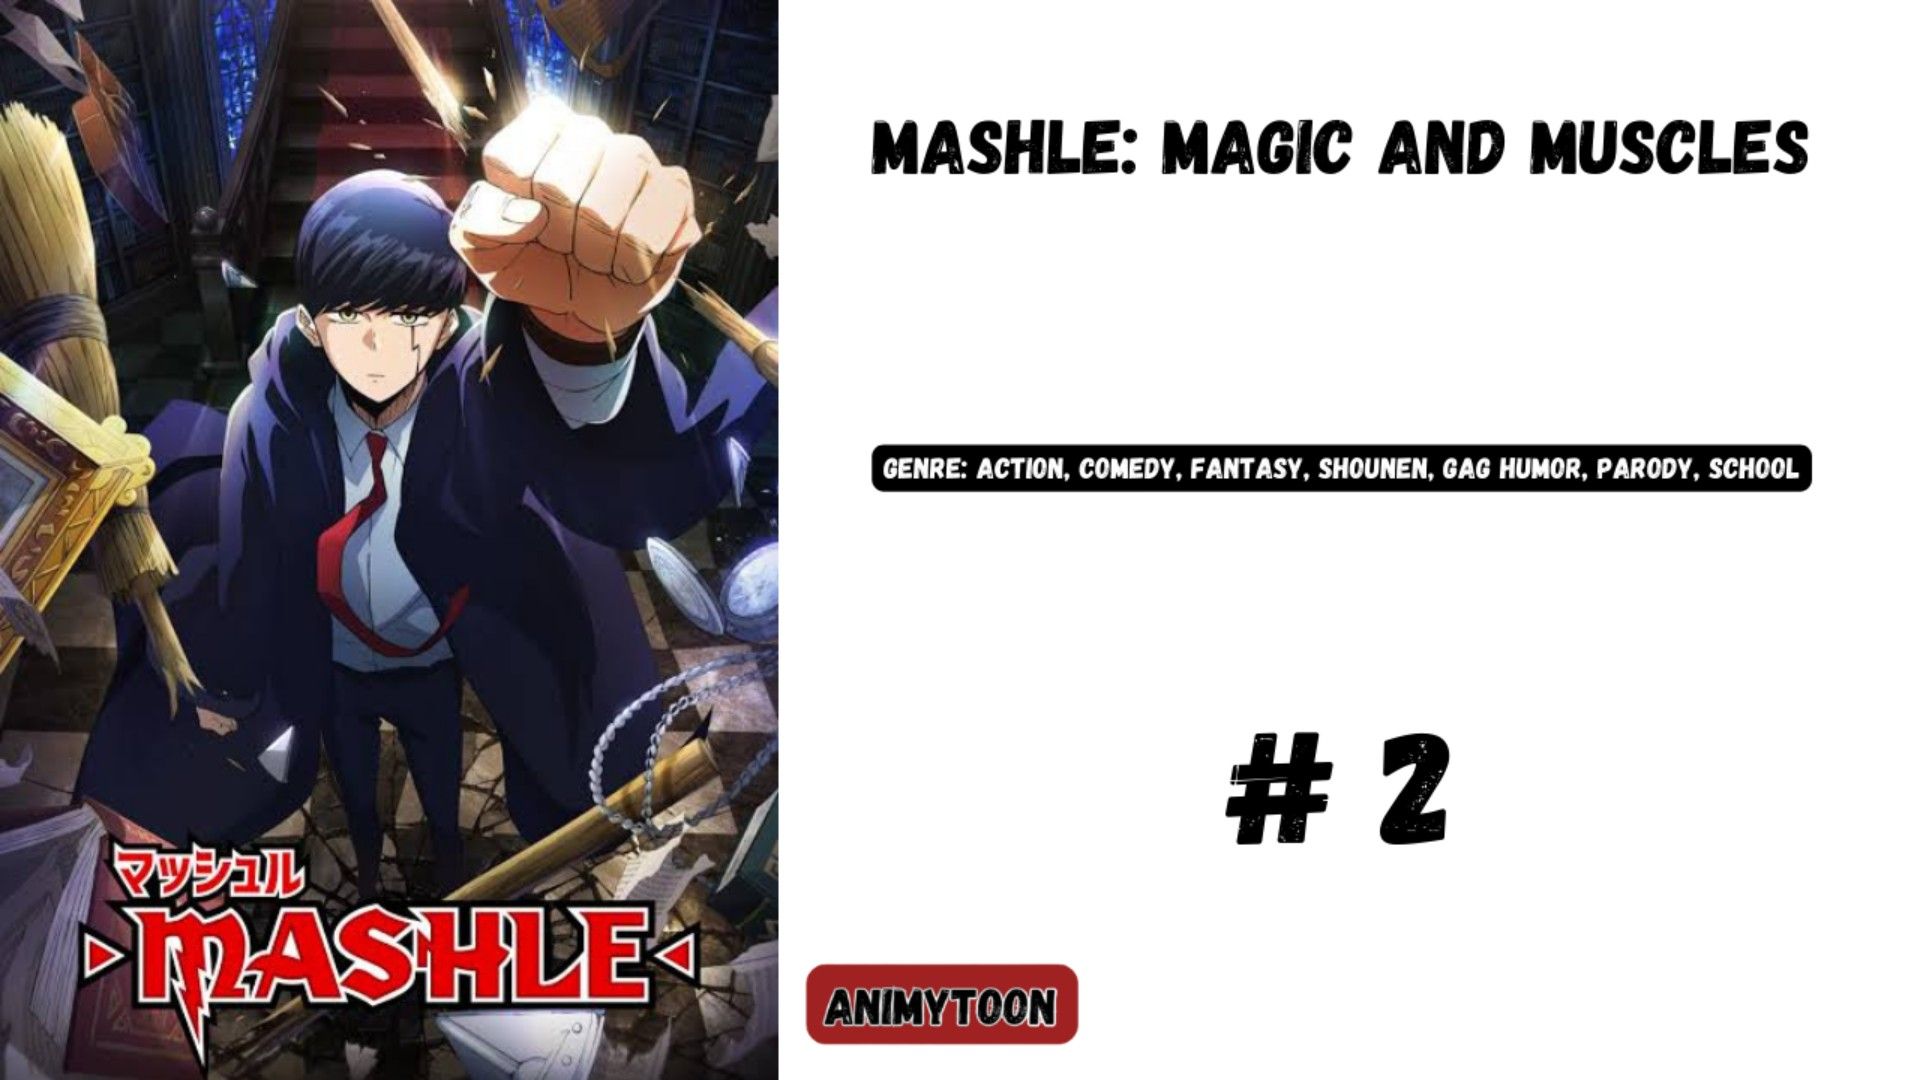 Mashle Episode 1 Part 2 Sub Indonesia #fyp #mashle #mahlesubindo #mash